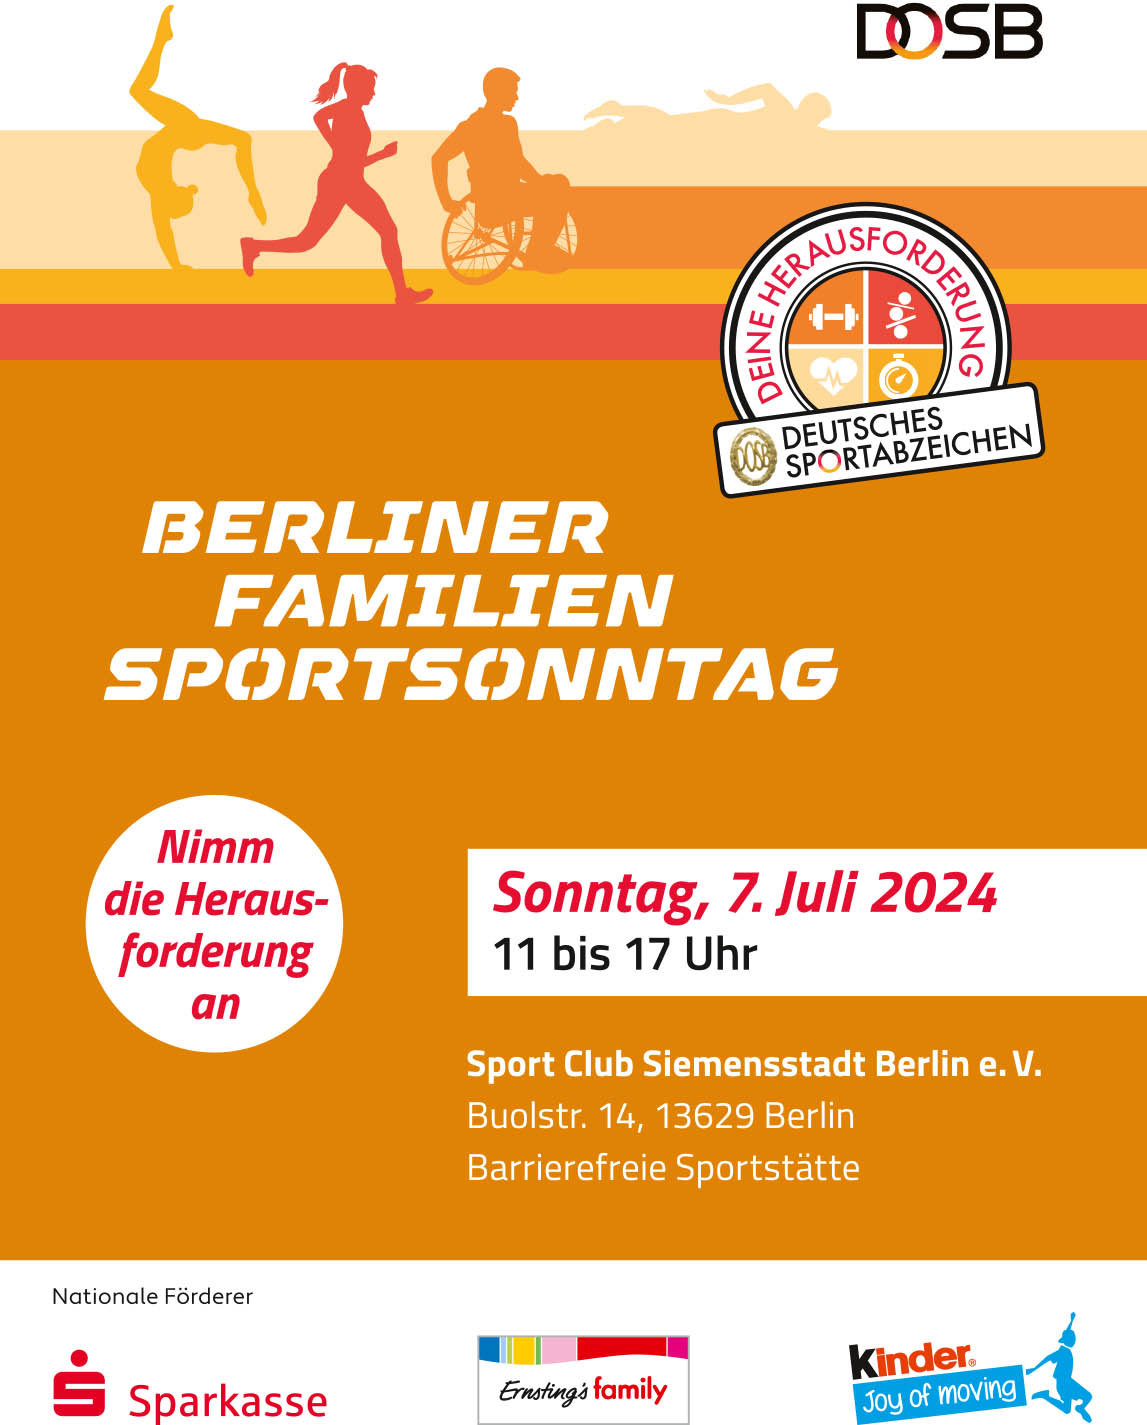 Deutsches Sportabzeichen – Berliner Familiensportsonntag